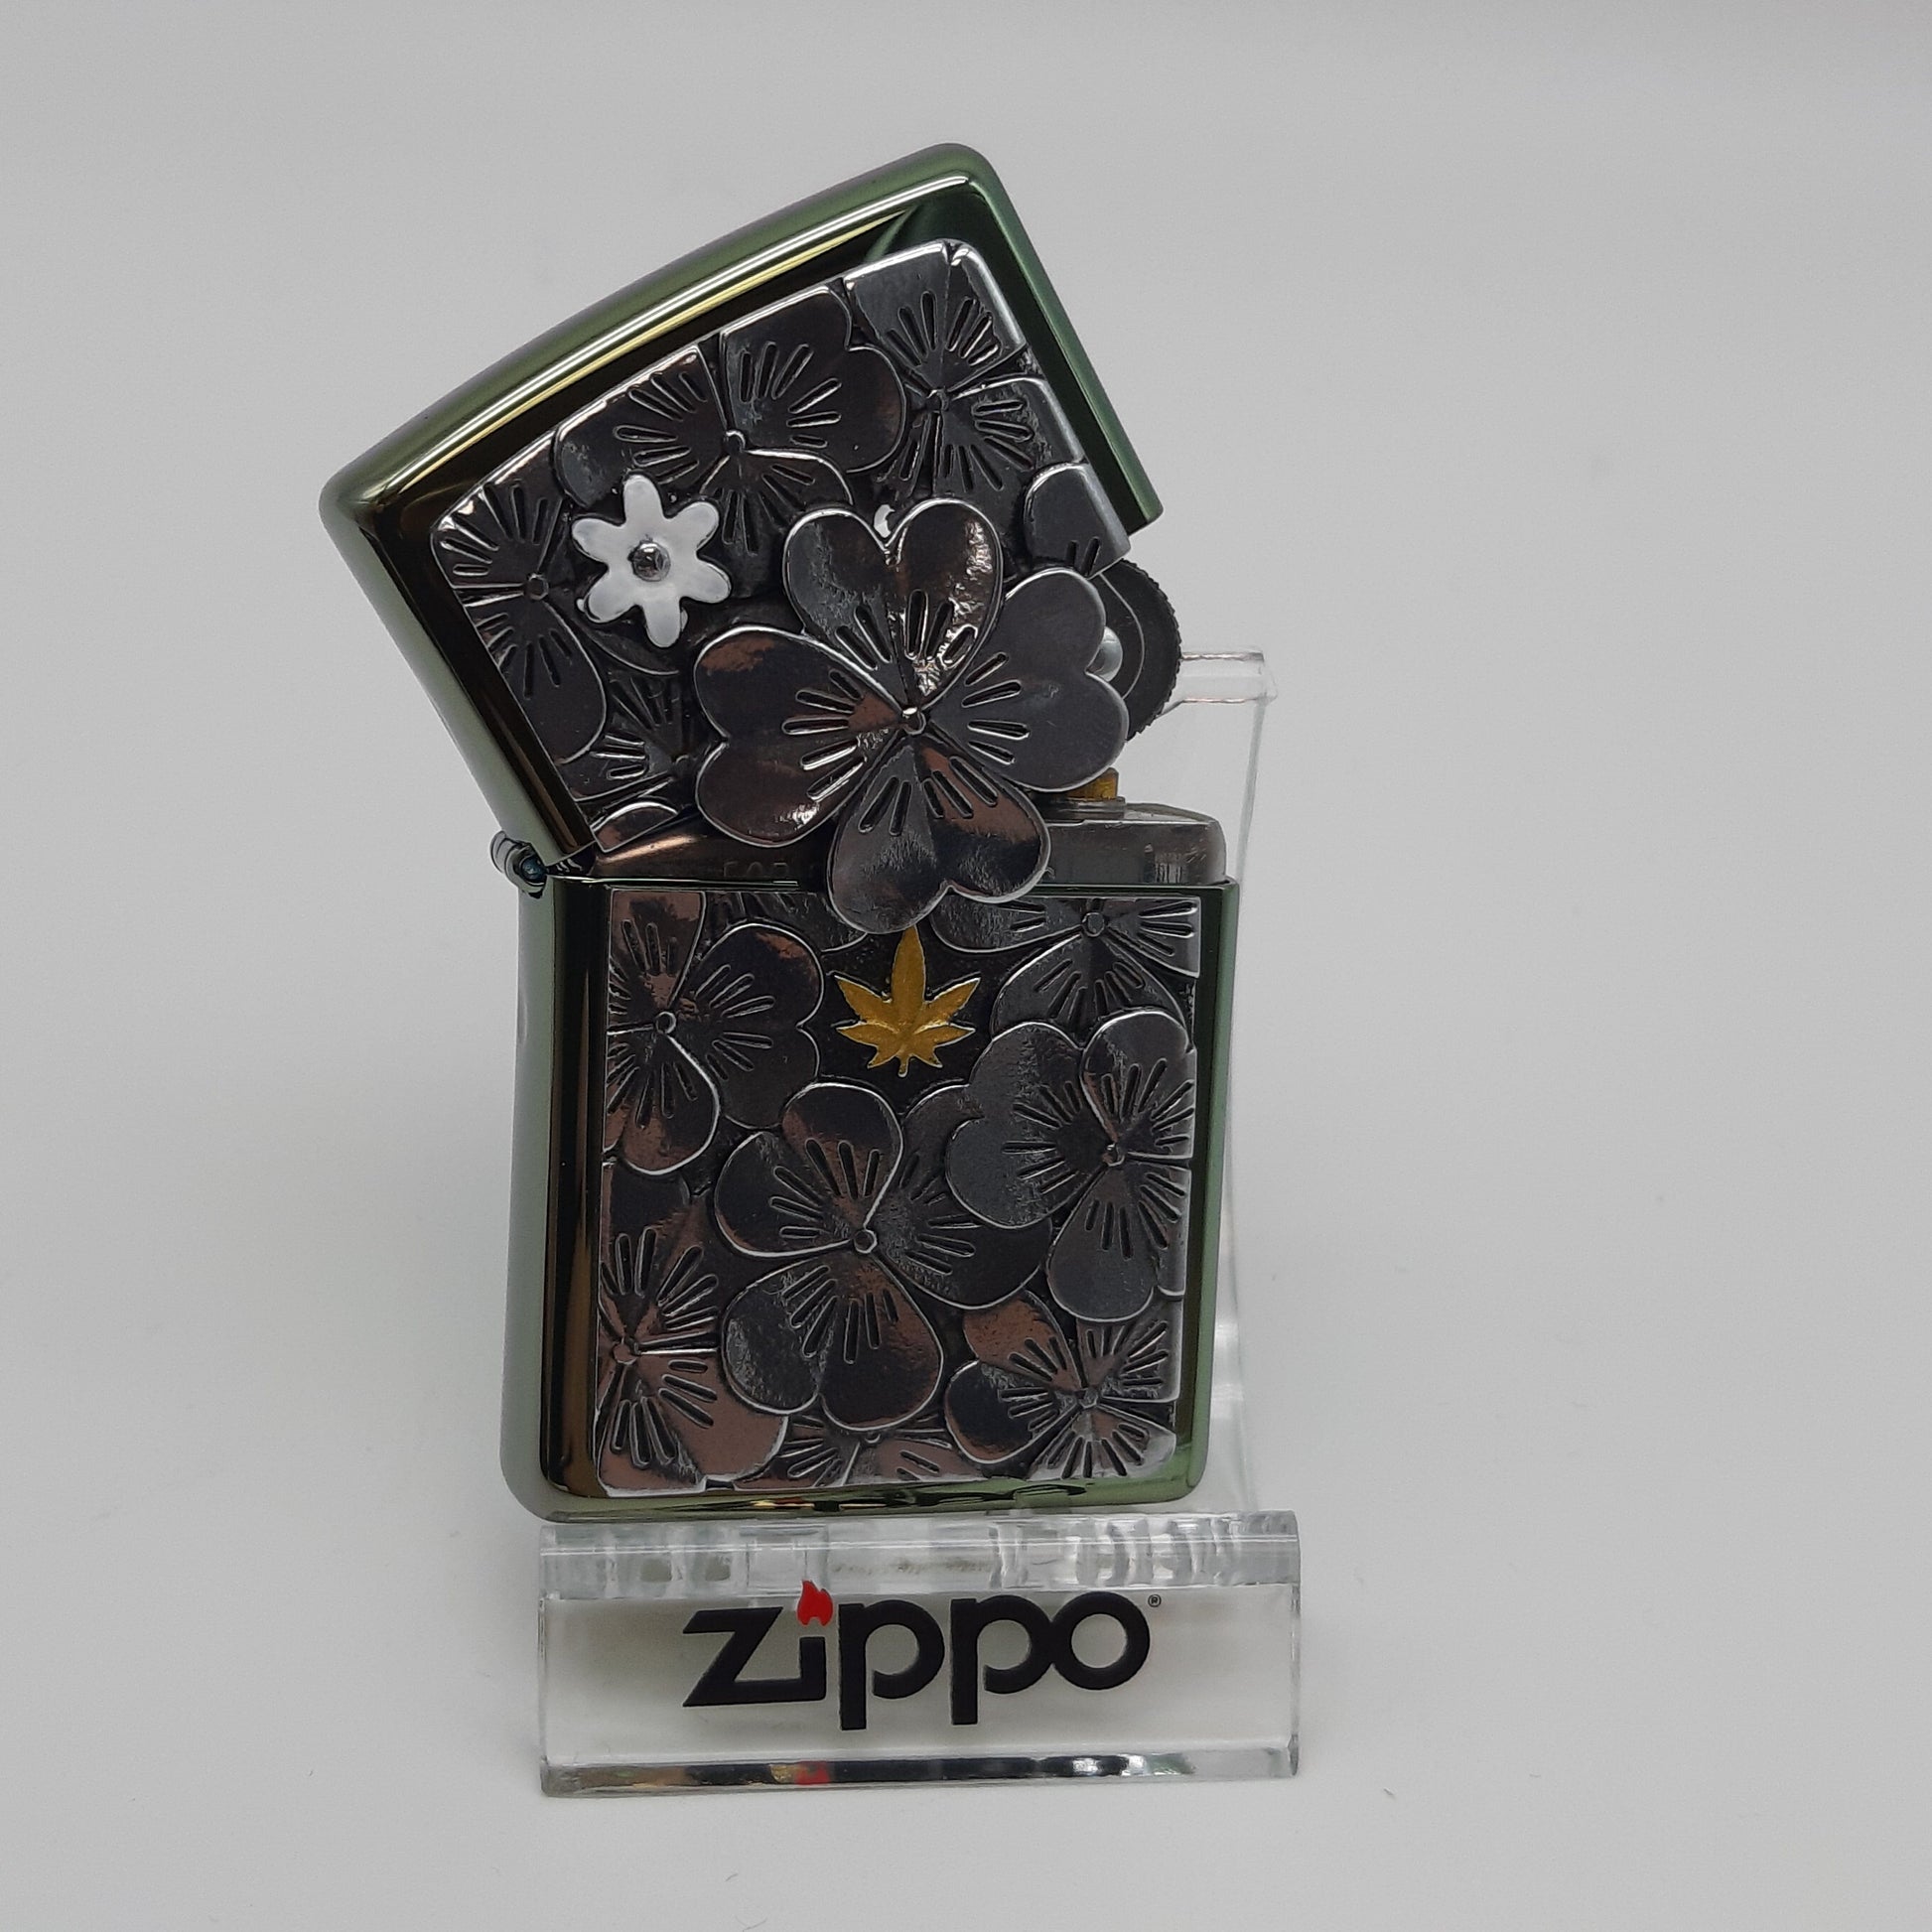 Zippo Zippo Benzinfeuerzeug Trick Clover Leaf - Limited Edition XXX/500